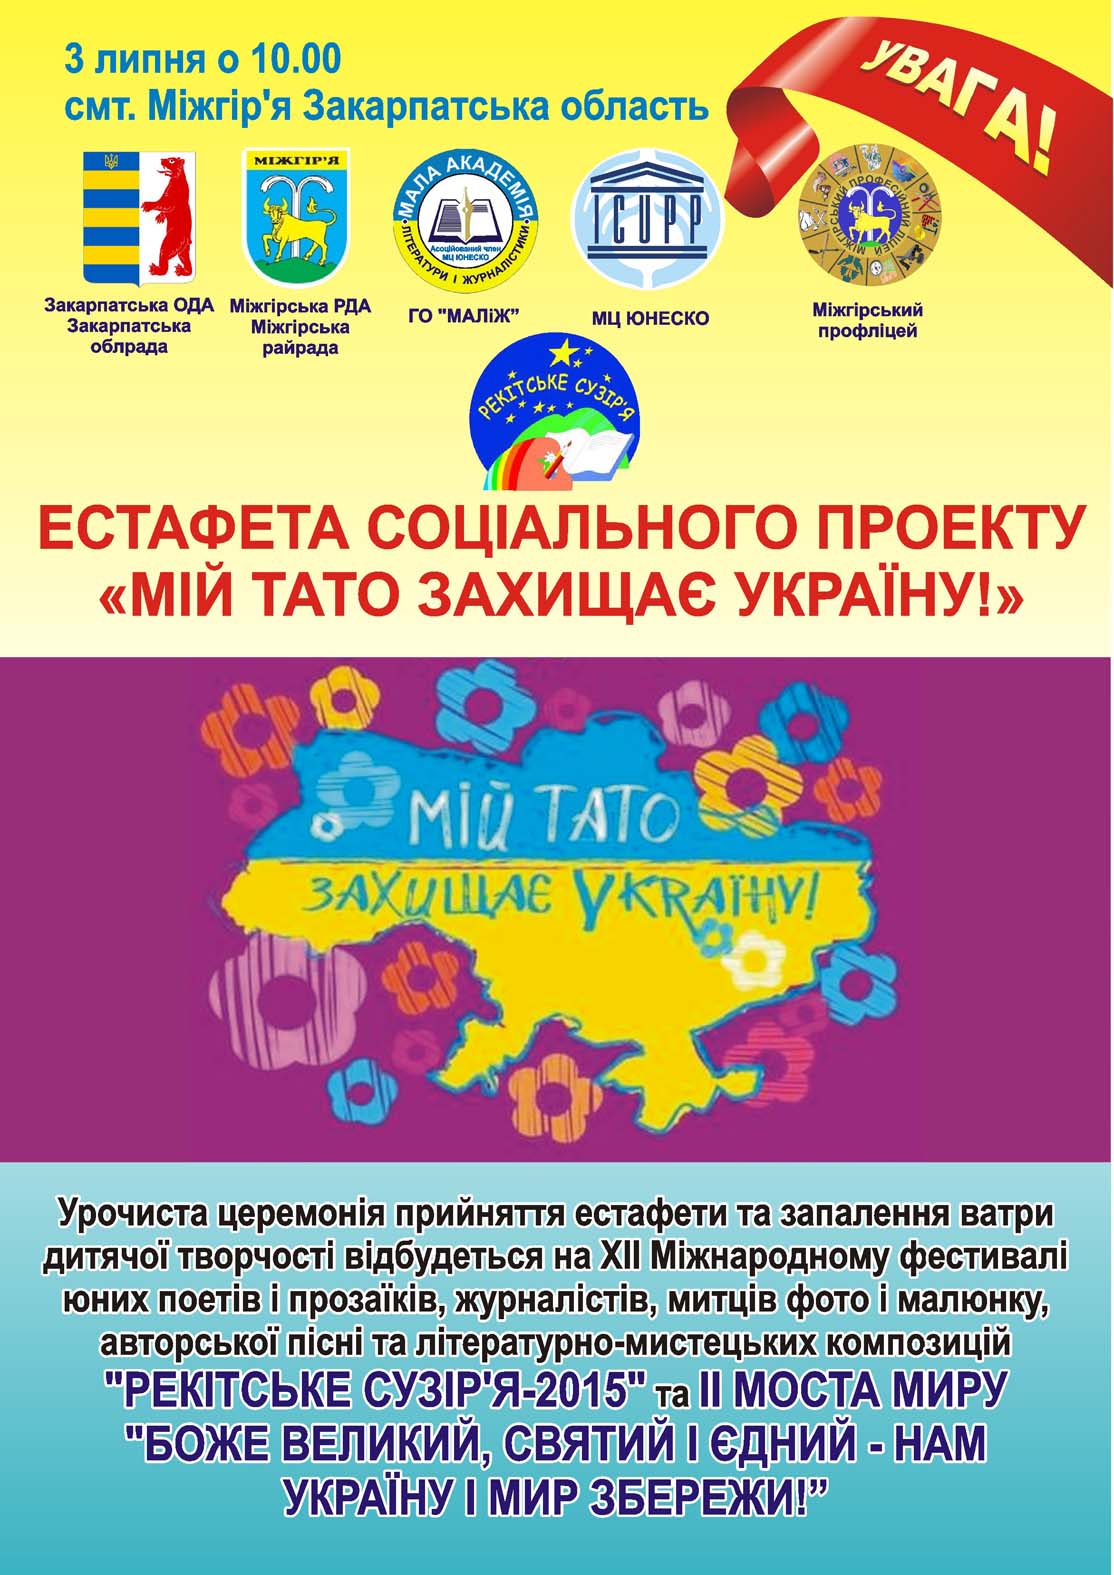 Основна мета проекту «Мій тато захищає Україну!» є психологічна підтримка  дітей учасників АТО, залучення їх до активного дозвілля, зокрема,через участь у творчих конкурсах та культурних заходах.